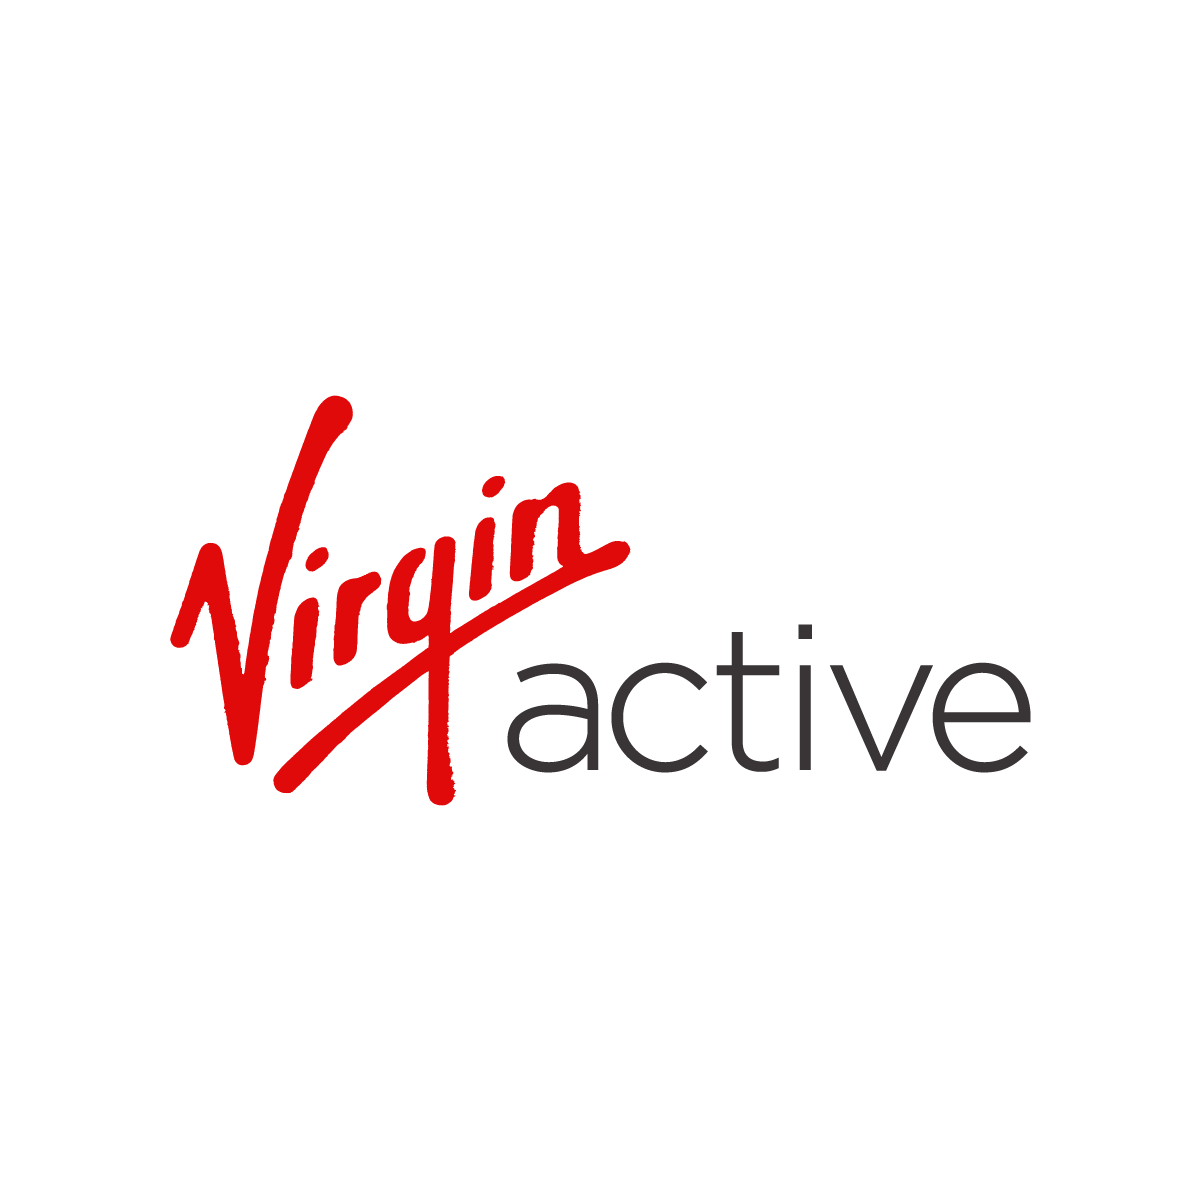 The Virgin Active logo